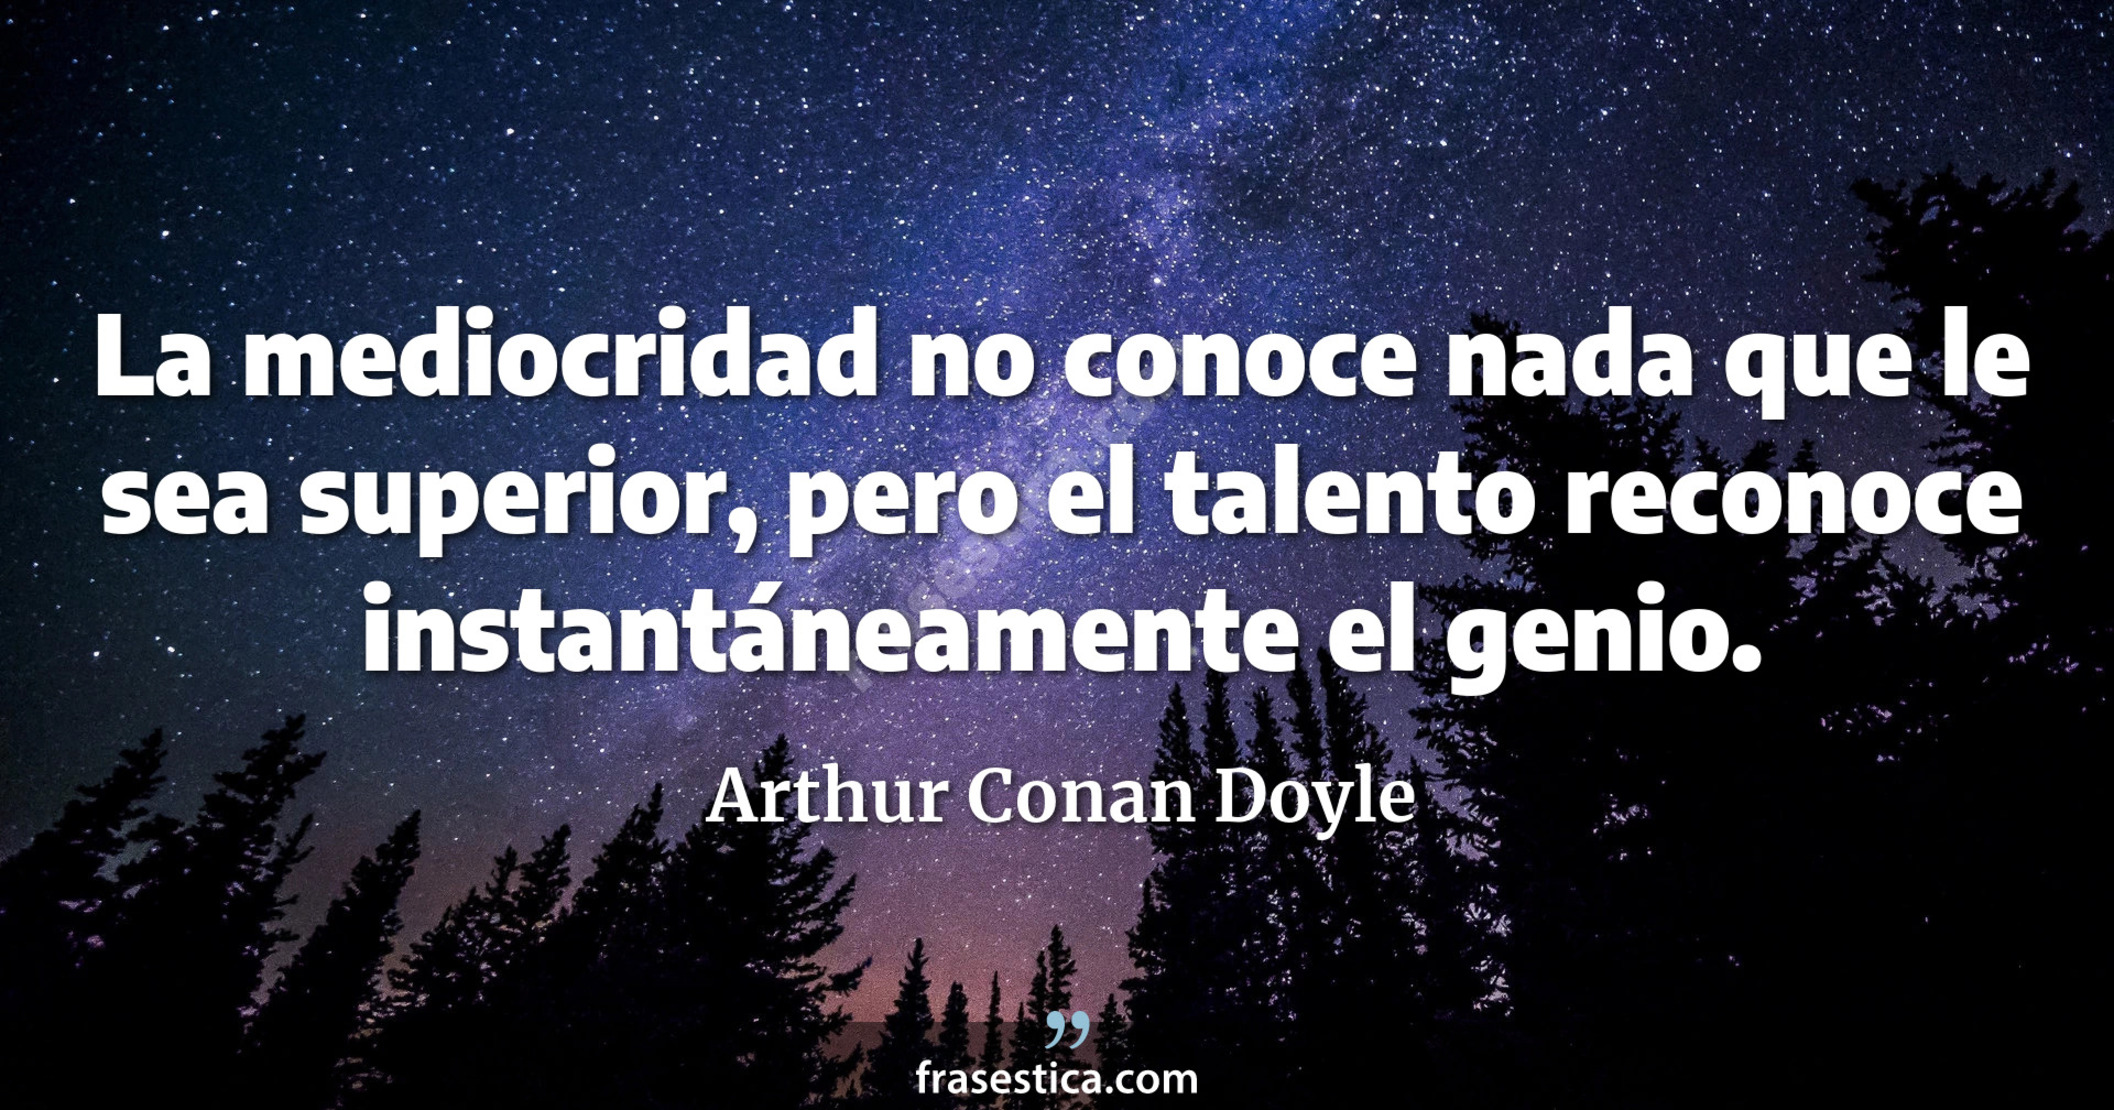 La mediocridad no conoce nada que le sea superior, pero el talento reconoce instantáneamente el genio. - Arthur Conan Doyle